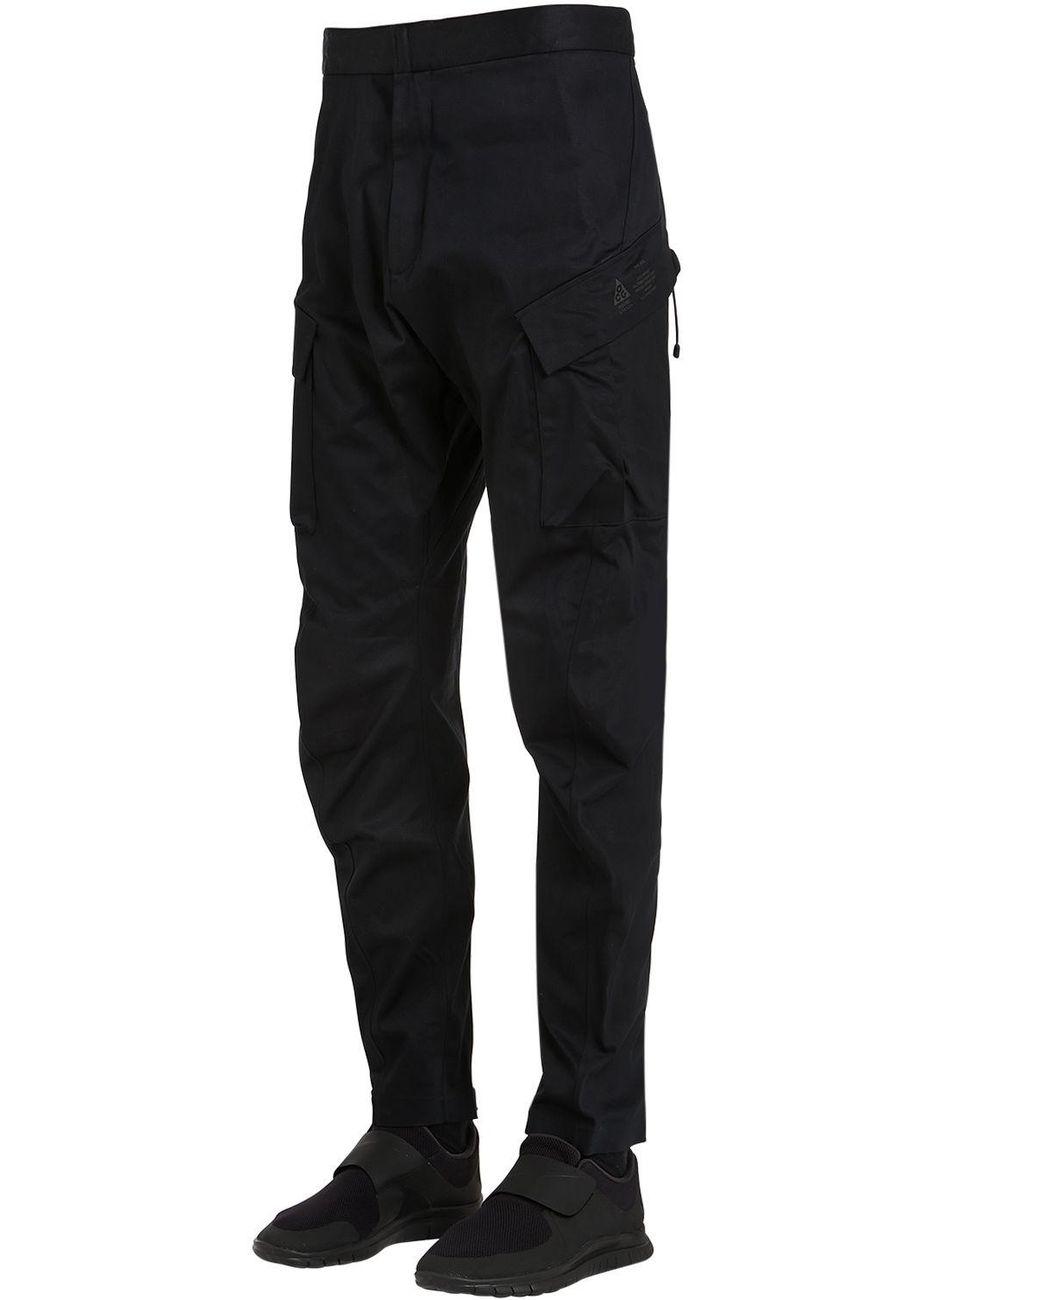 Nike Men's Black Nikelab Acg Cargo Pants